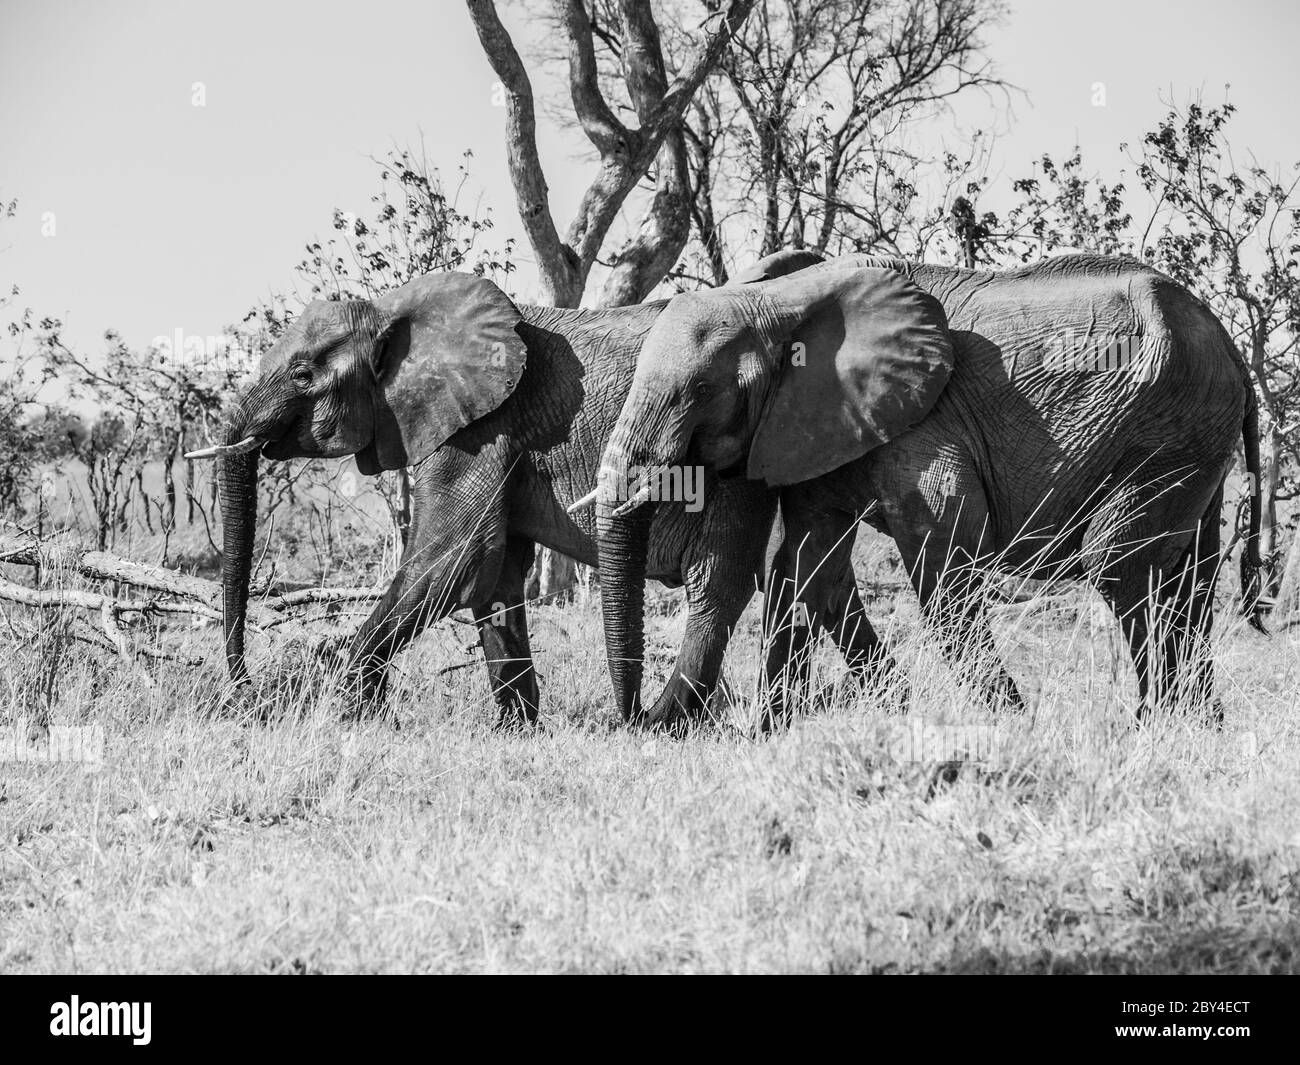 Zwei afrikanische Elefanten wandern in der Savanne, Chobe National Park, Botswana. Schwarzweiß-Bild. Stockfoto